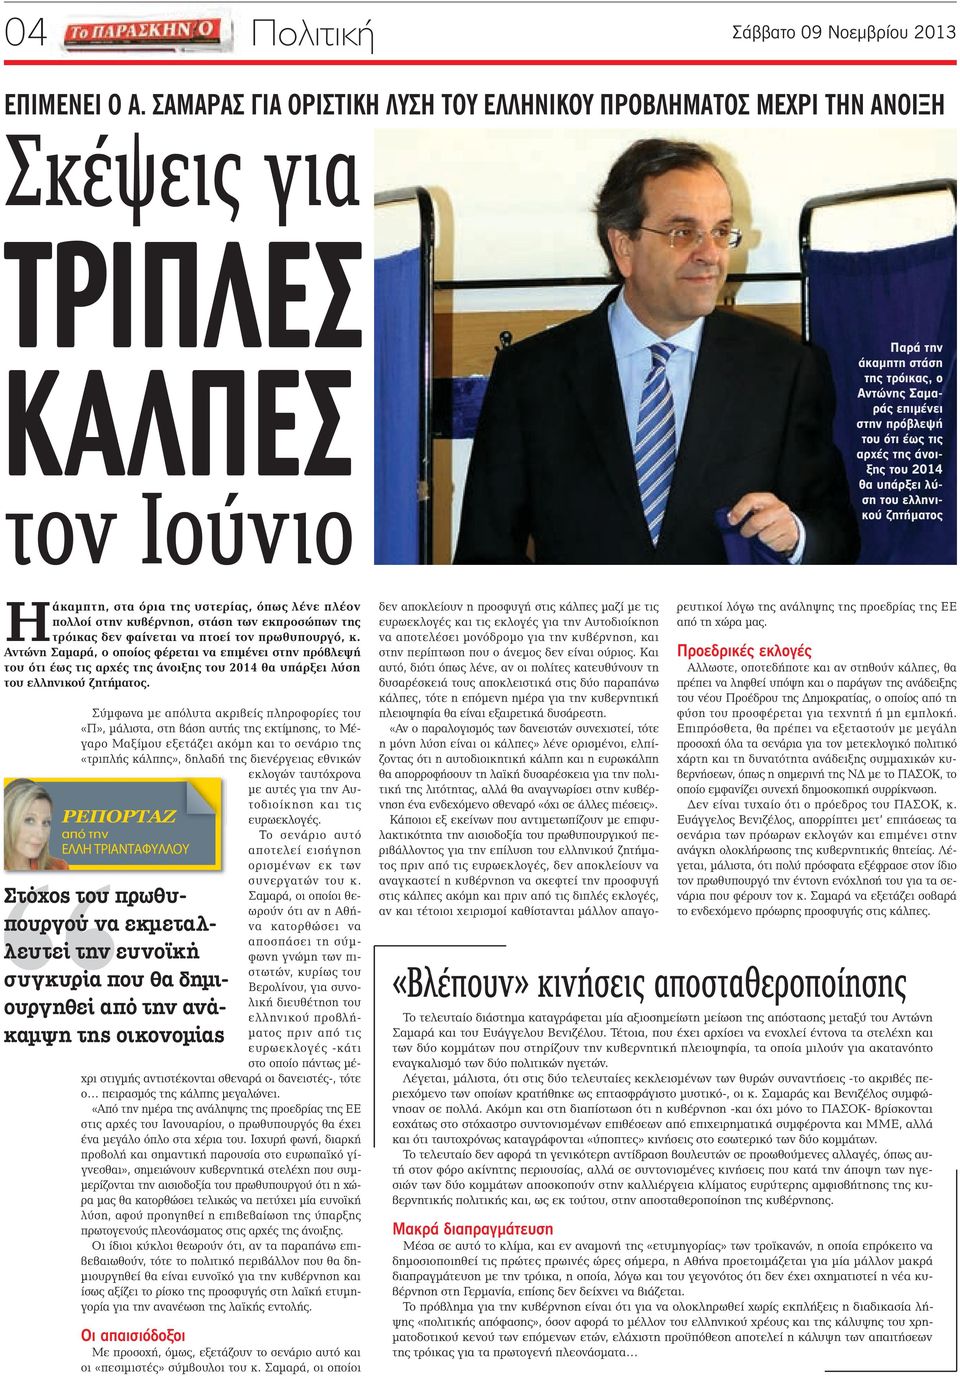 αρχές της άνοιξης του 2014 θα υπάρξει λύση του ελληνικού ζητήματος Ηάκαμπτη, στα όρια της υστερίας, όπως λένε πλέον πολλοί στην κυβέρνηση, στάση των εκπροσώπων της τρόικας δεν φαίνεται να πτοεί τον